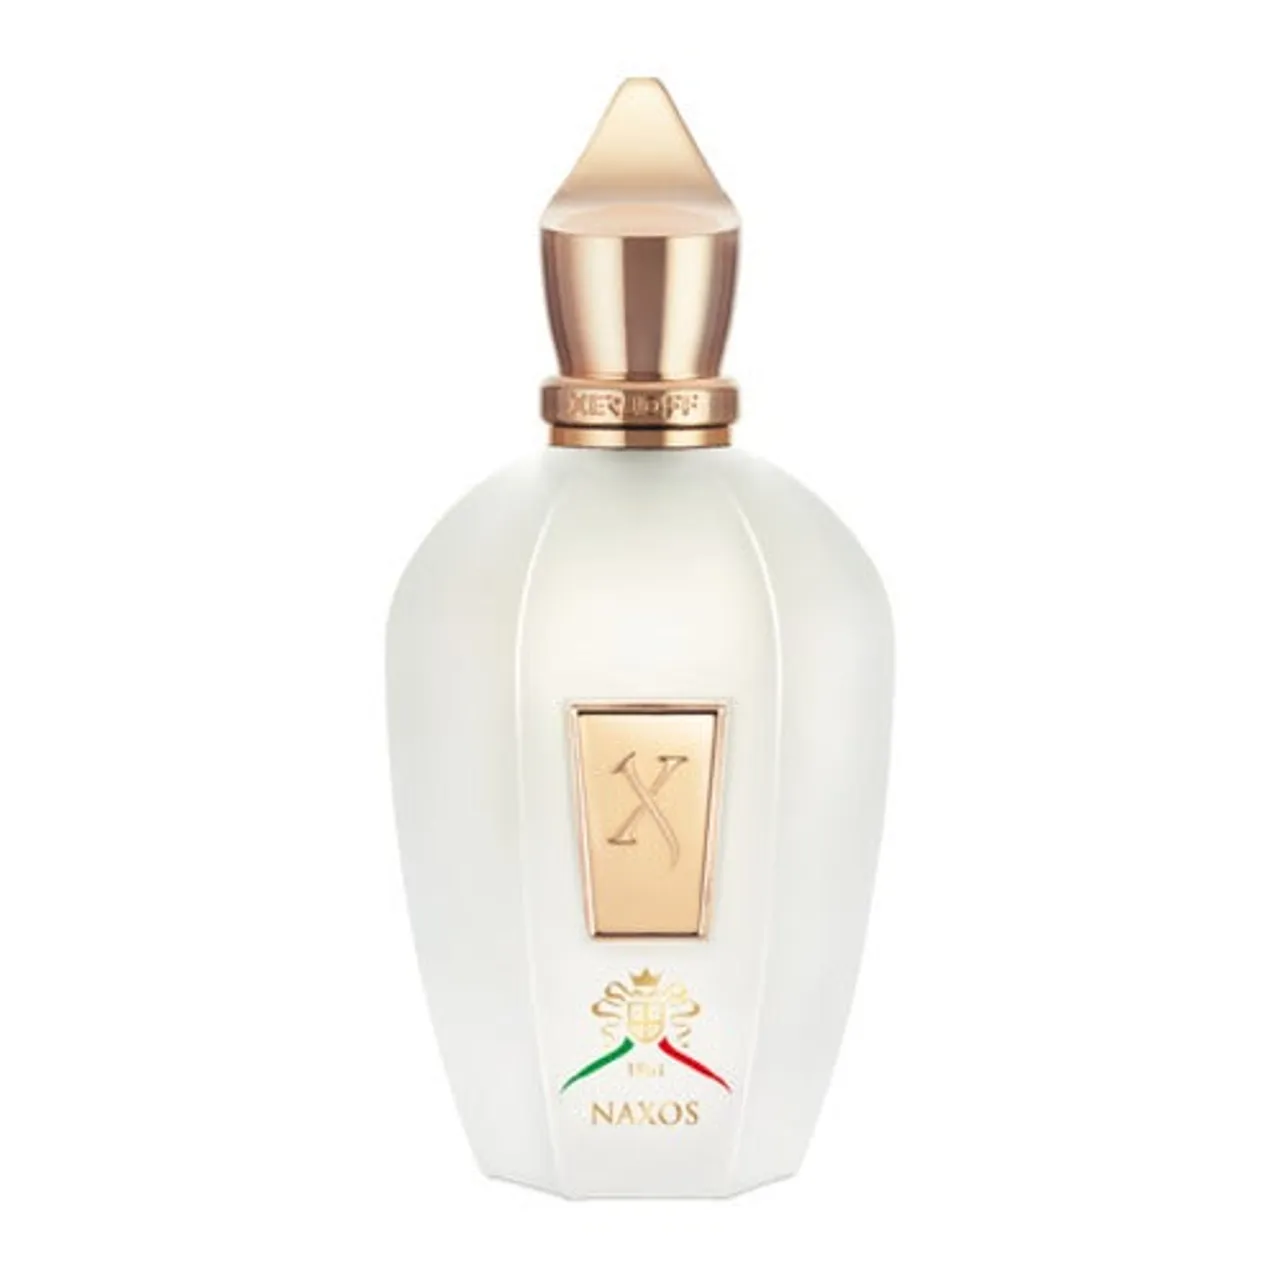 Xerjoff Naxos Eau de Parfum 100 ml